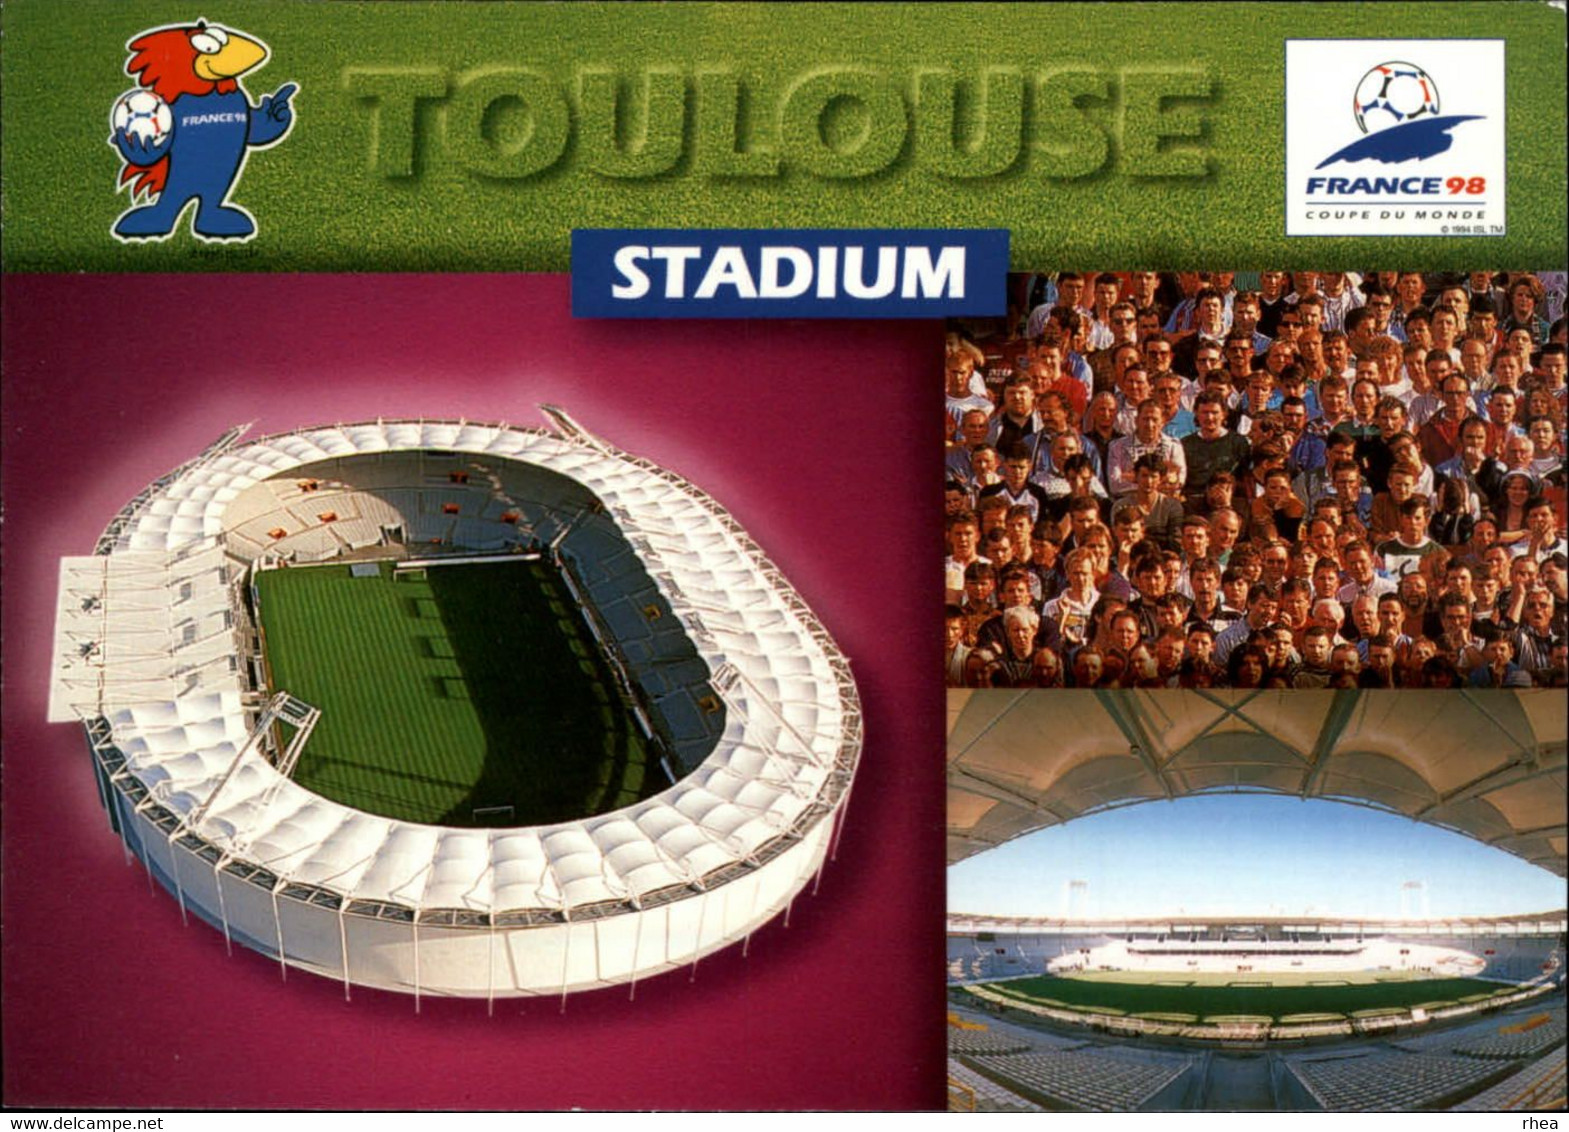 SPORTS - FOOTBALL - Série de 9 cartes - Stades coupe du Monde 98 - nantes, paris, marseille, lens, bordeaux, lyon, etc